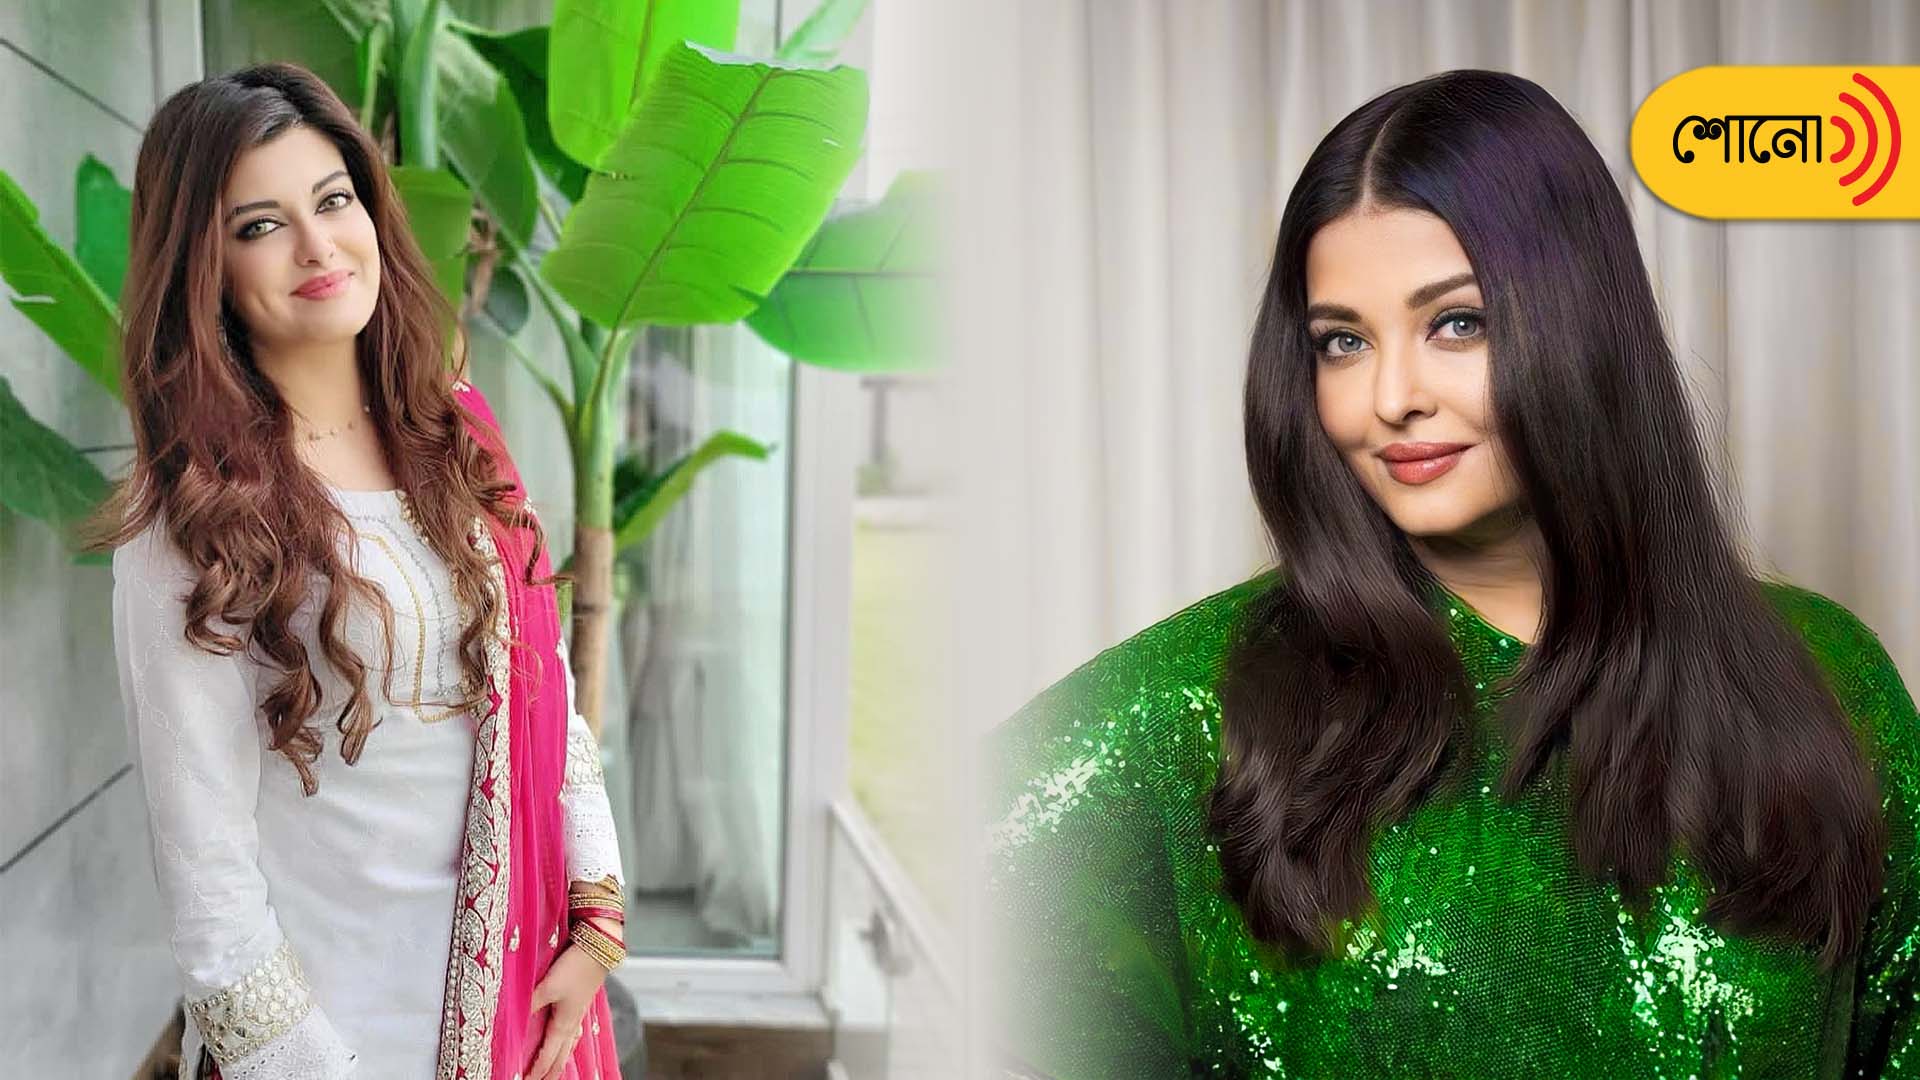 Pakistani entrepreneur Kanwal Cheema hates comparison with Aishwarya Rai